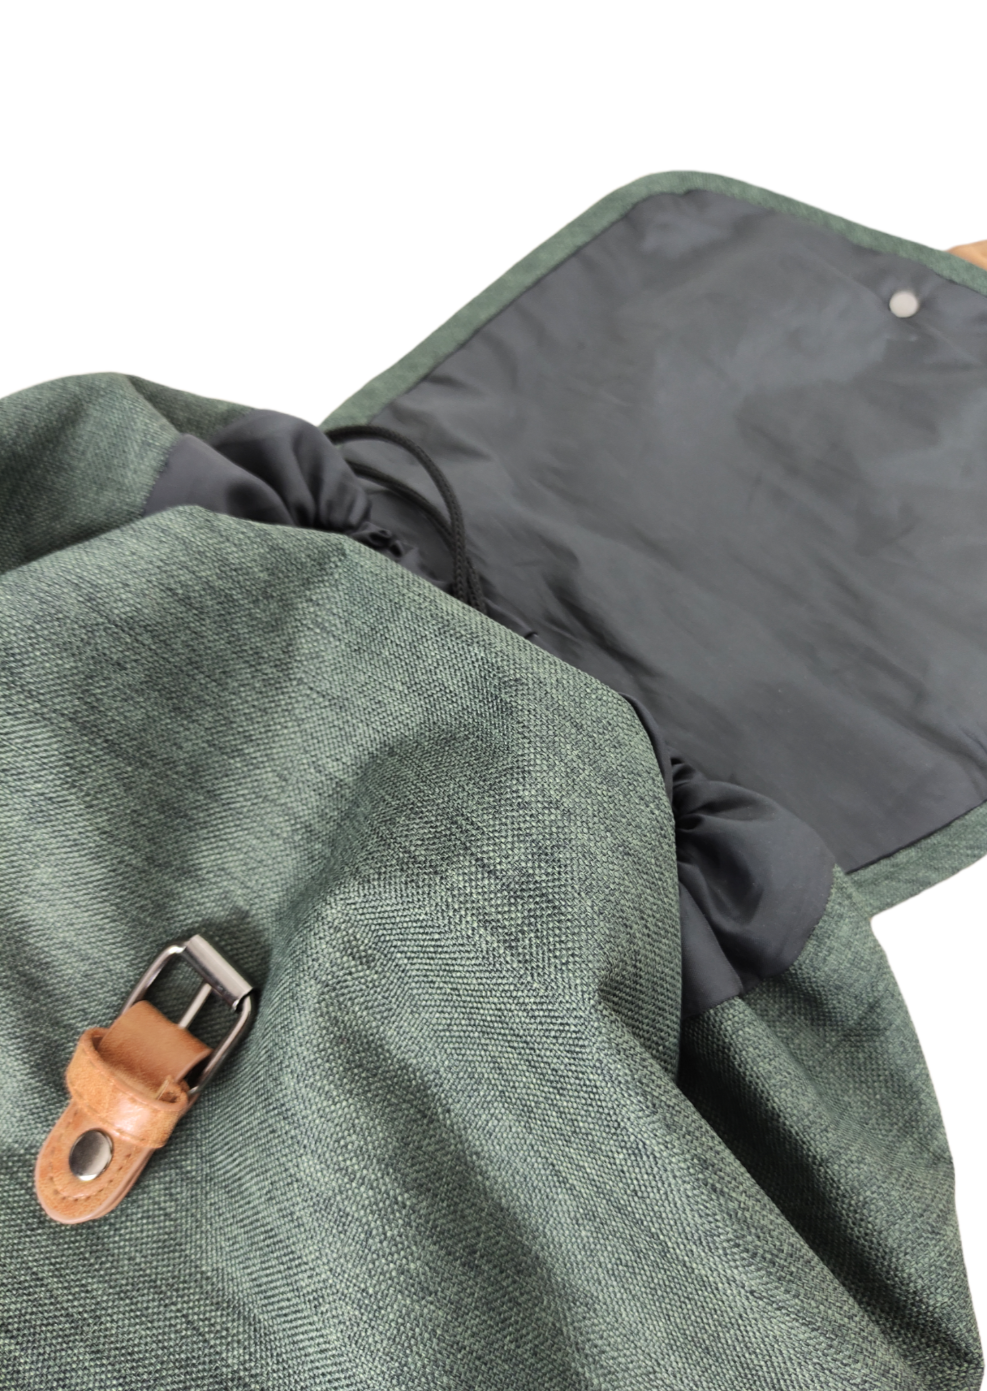 Γυναικεία Τσάντα Πλάτης (Backpack) NEW REBELS σε Κυπαρισσί χρώμα